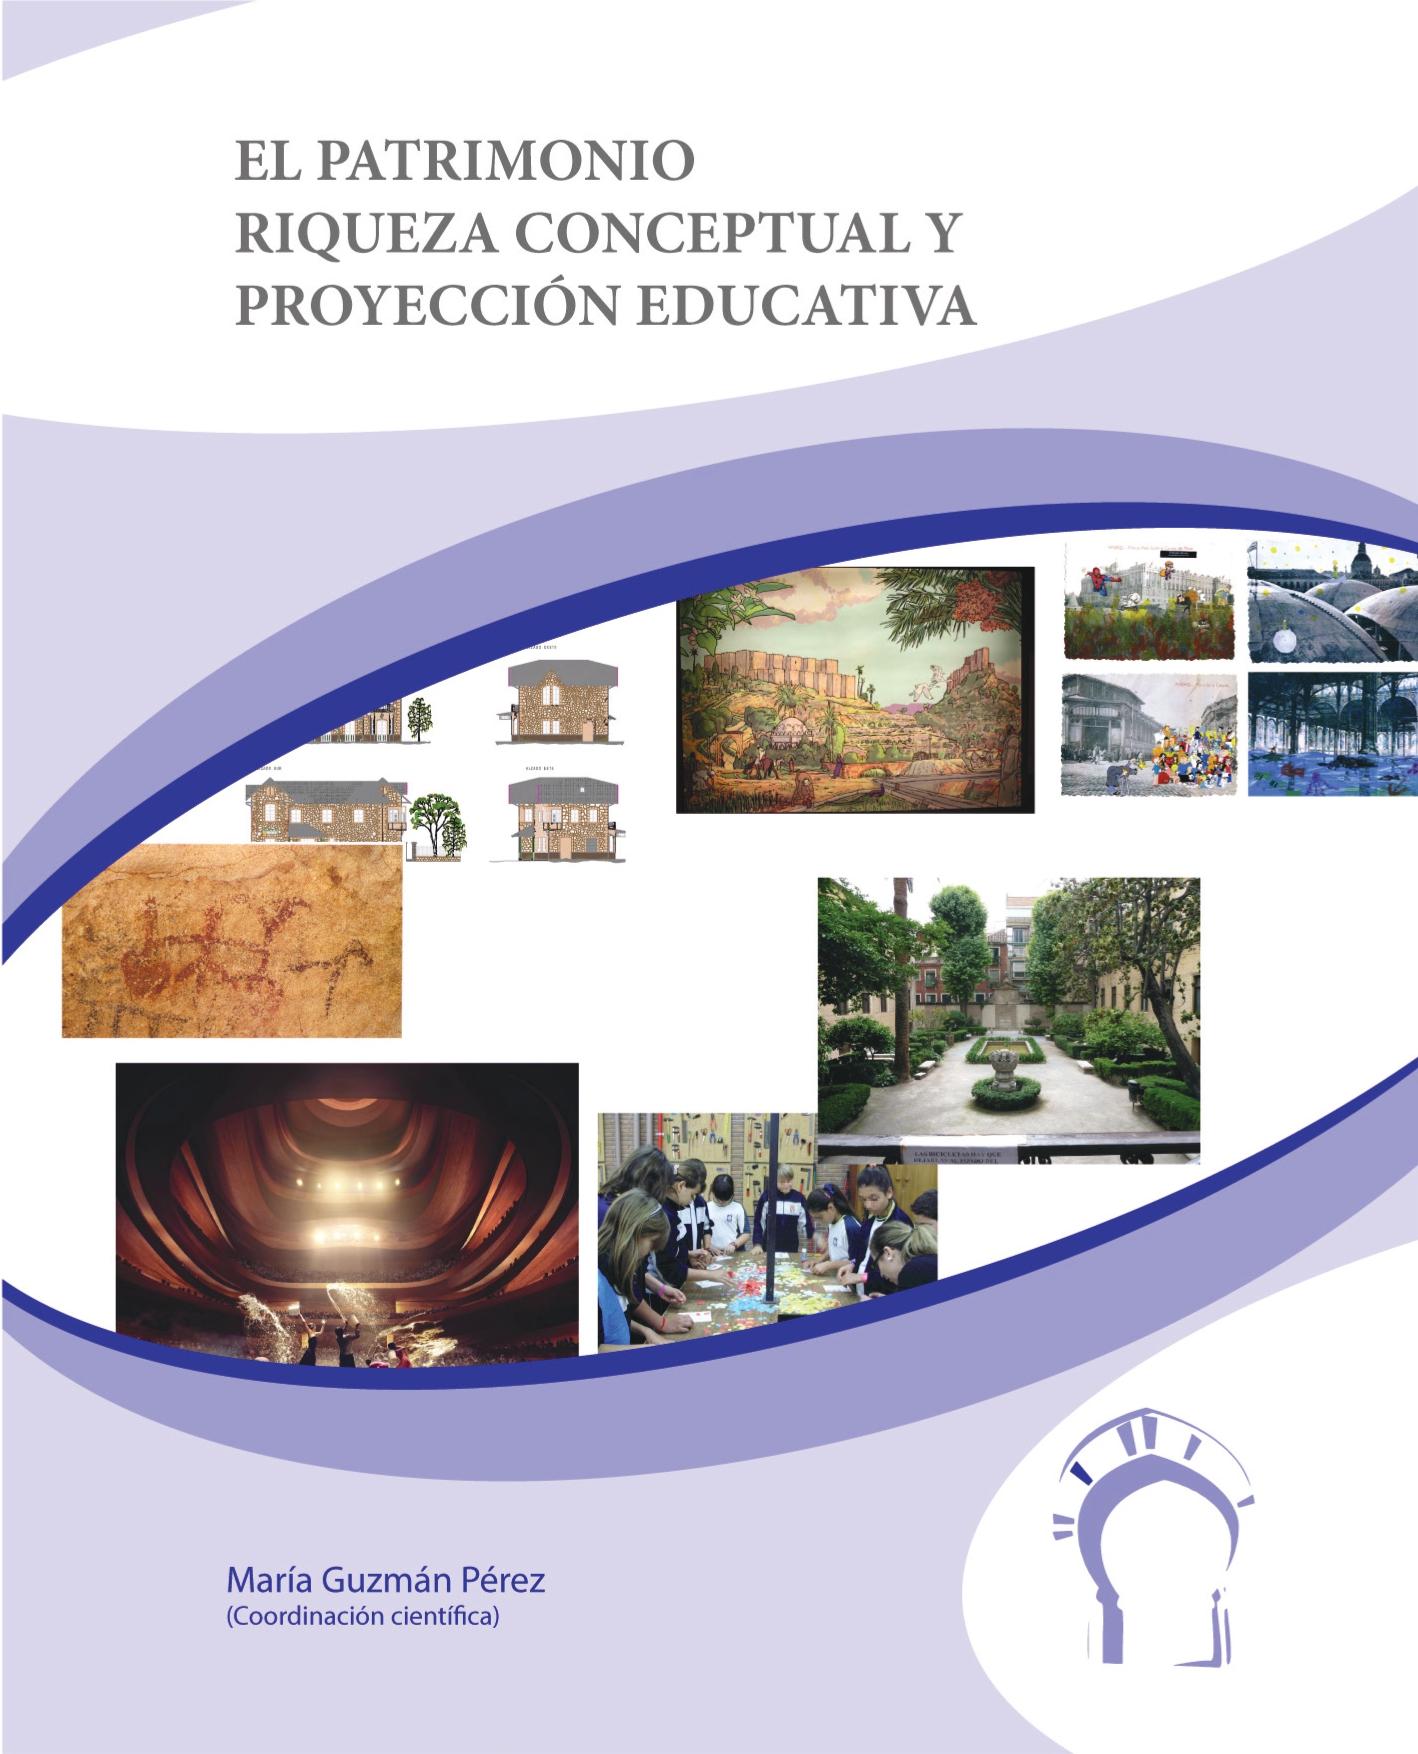 Imagen de portada del libro El patrimonio: riqueza conceptual y proyección educativa